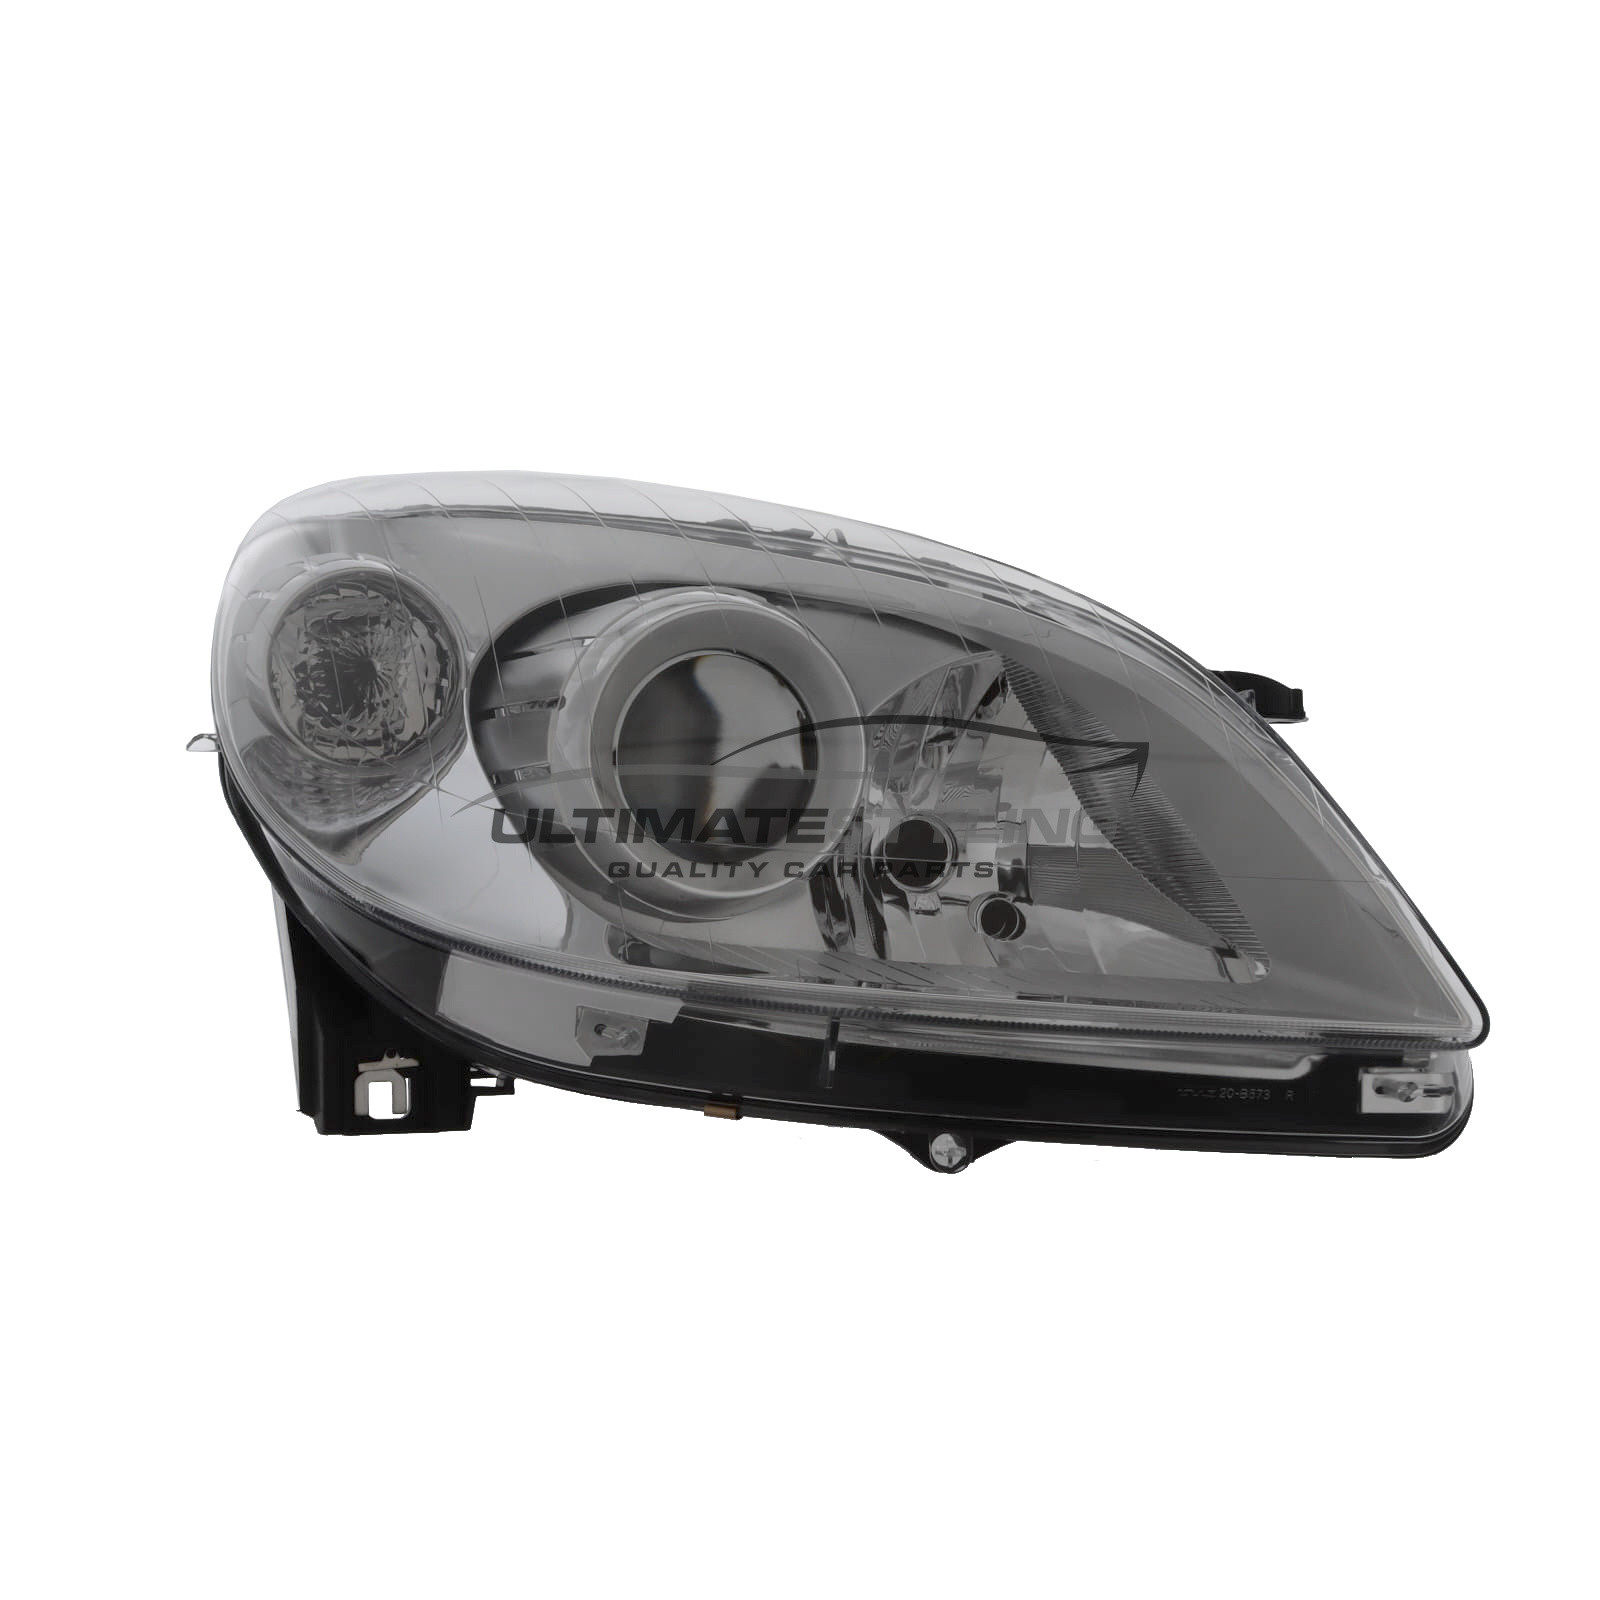 Headlight / Headlamp for Mercedes Benz B Class